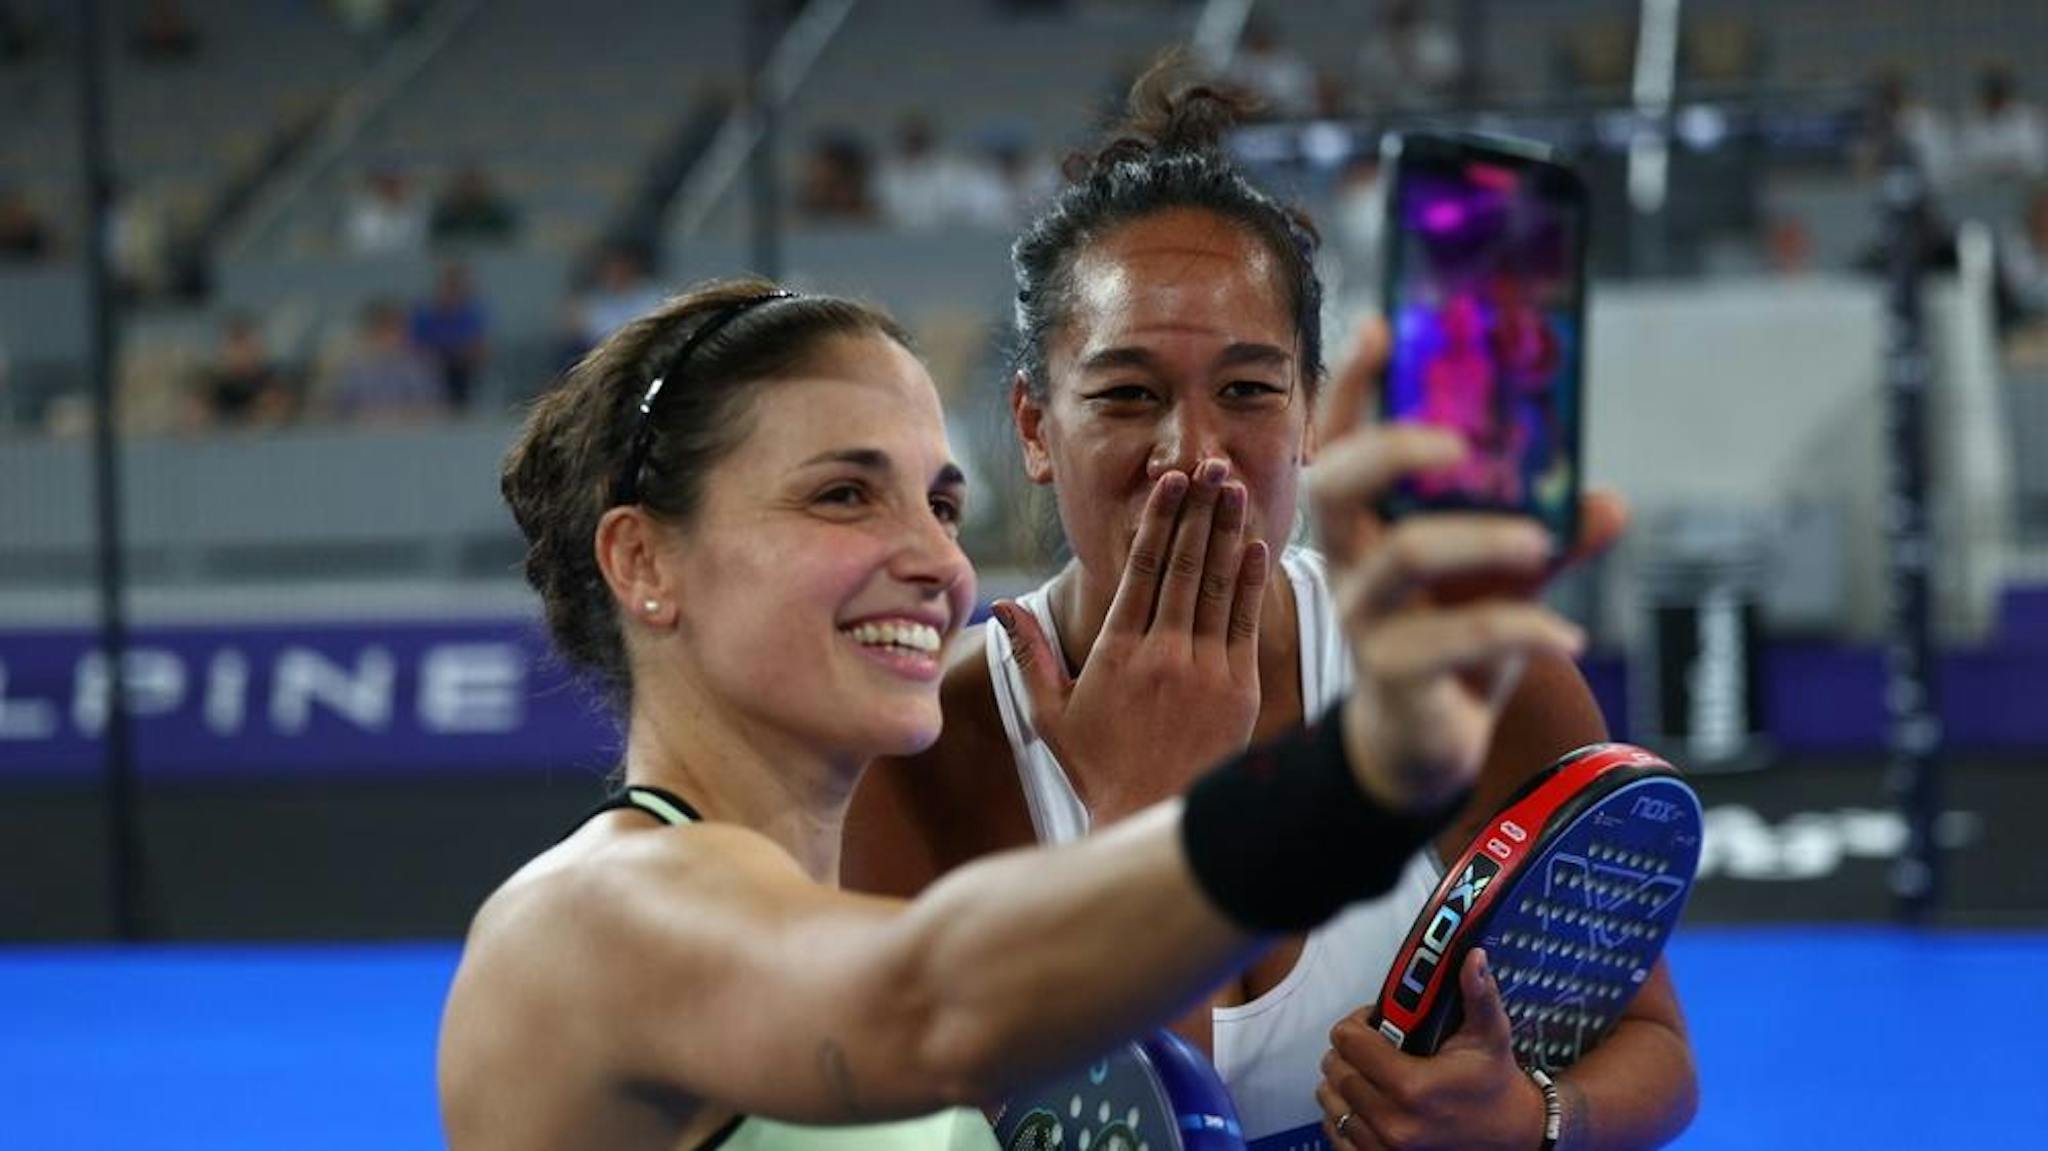 Avec sa partenaire espagnole, Léa Godallier (au 2e plan) s'offre un "selfie" en souvenir de cette belle victoire.